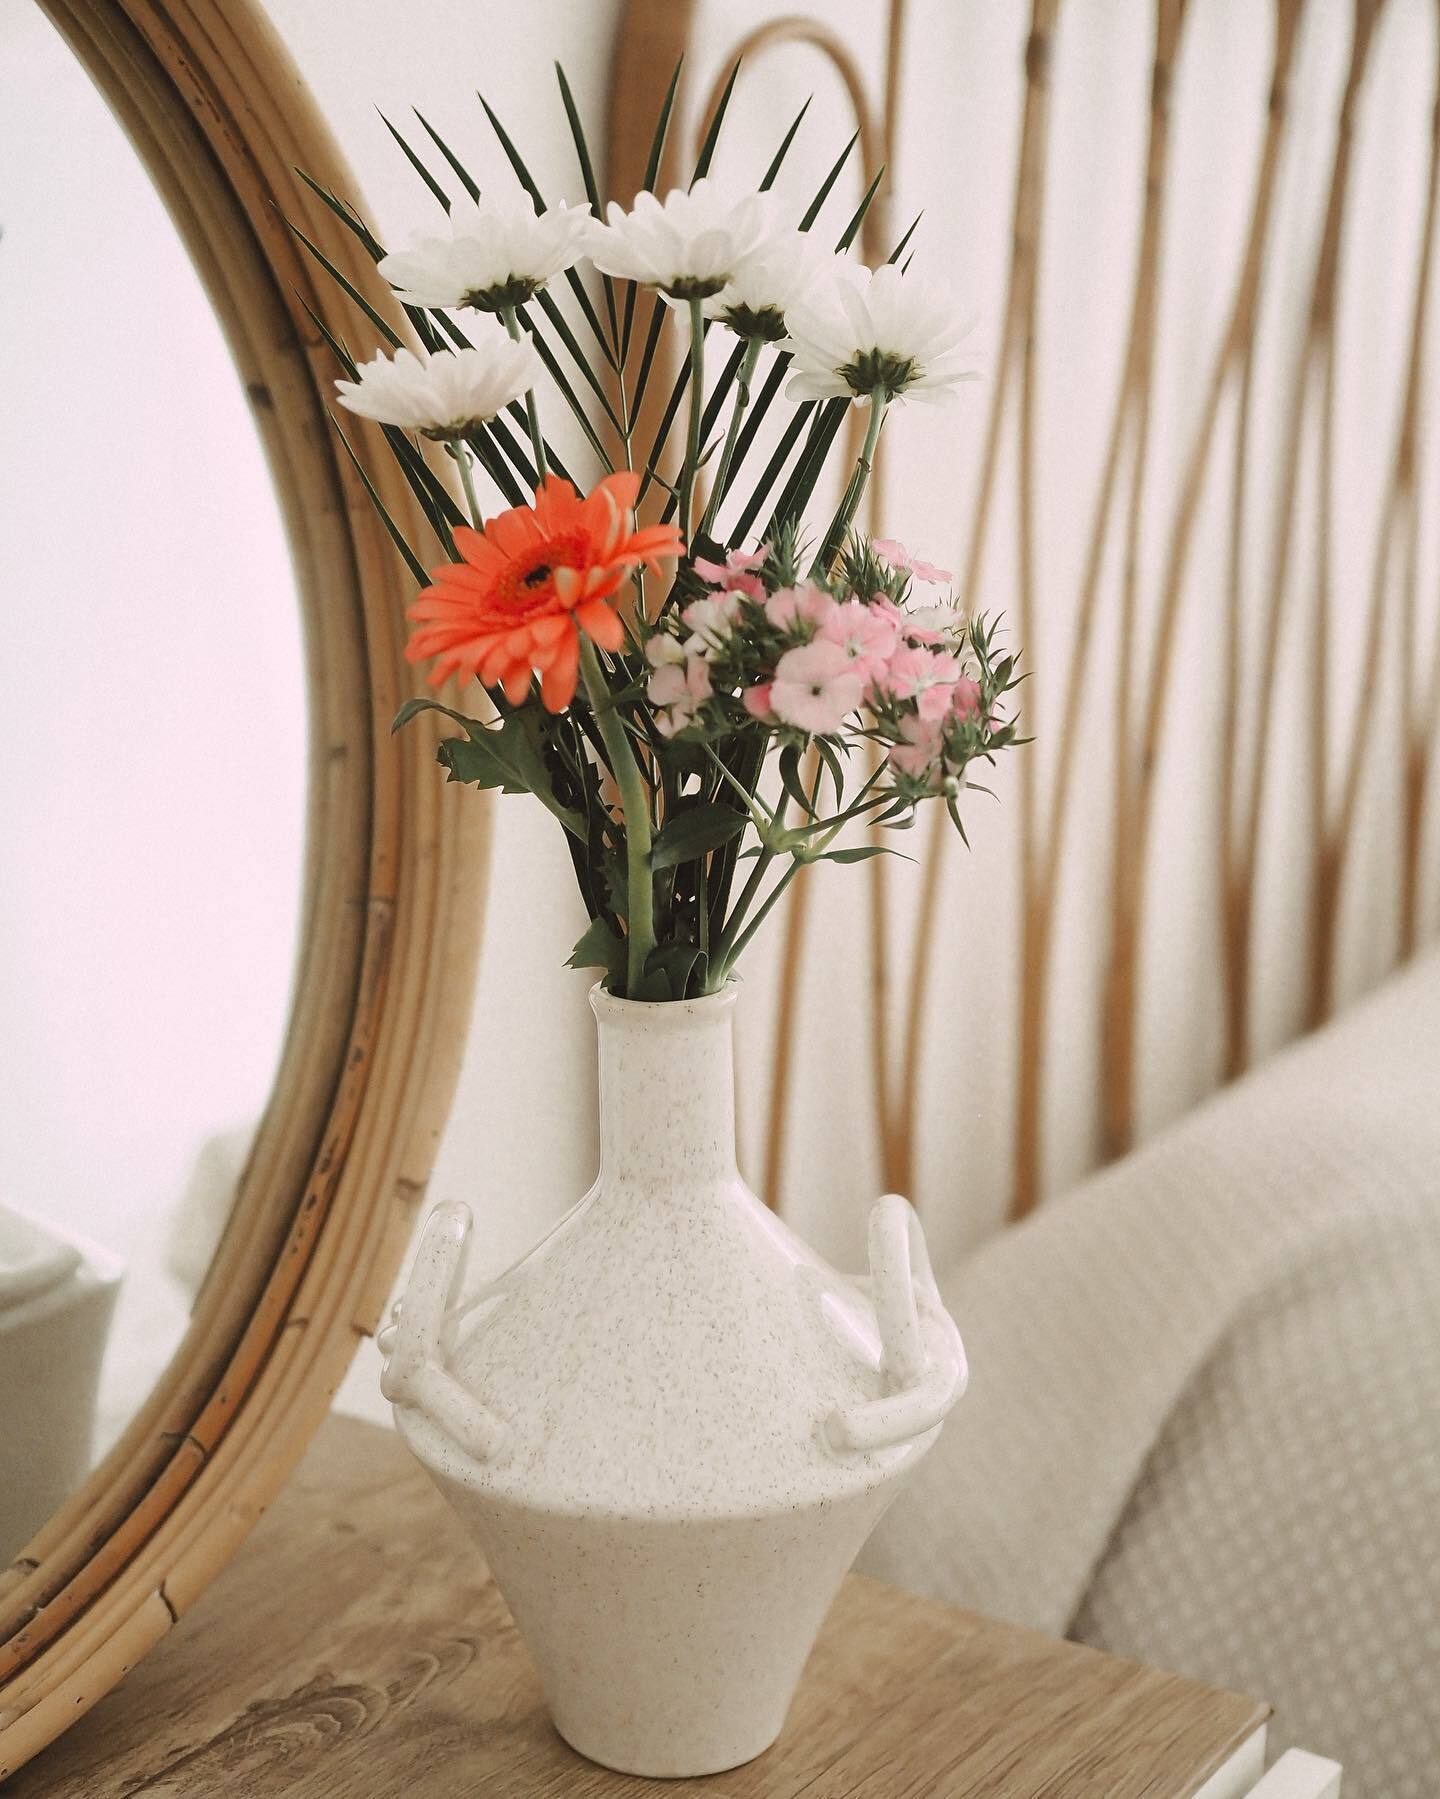 Decorative vase